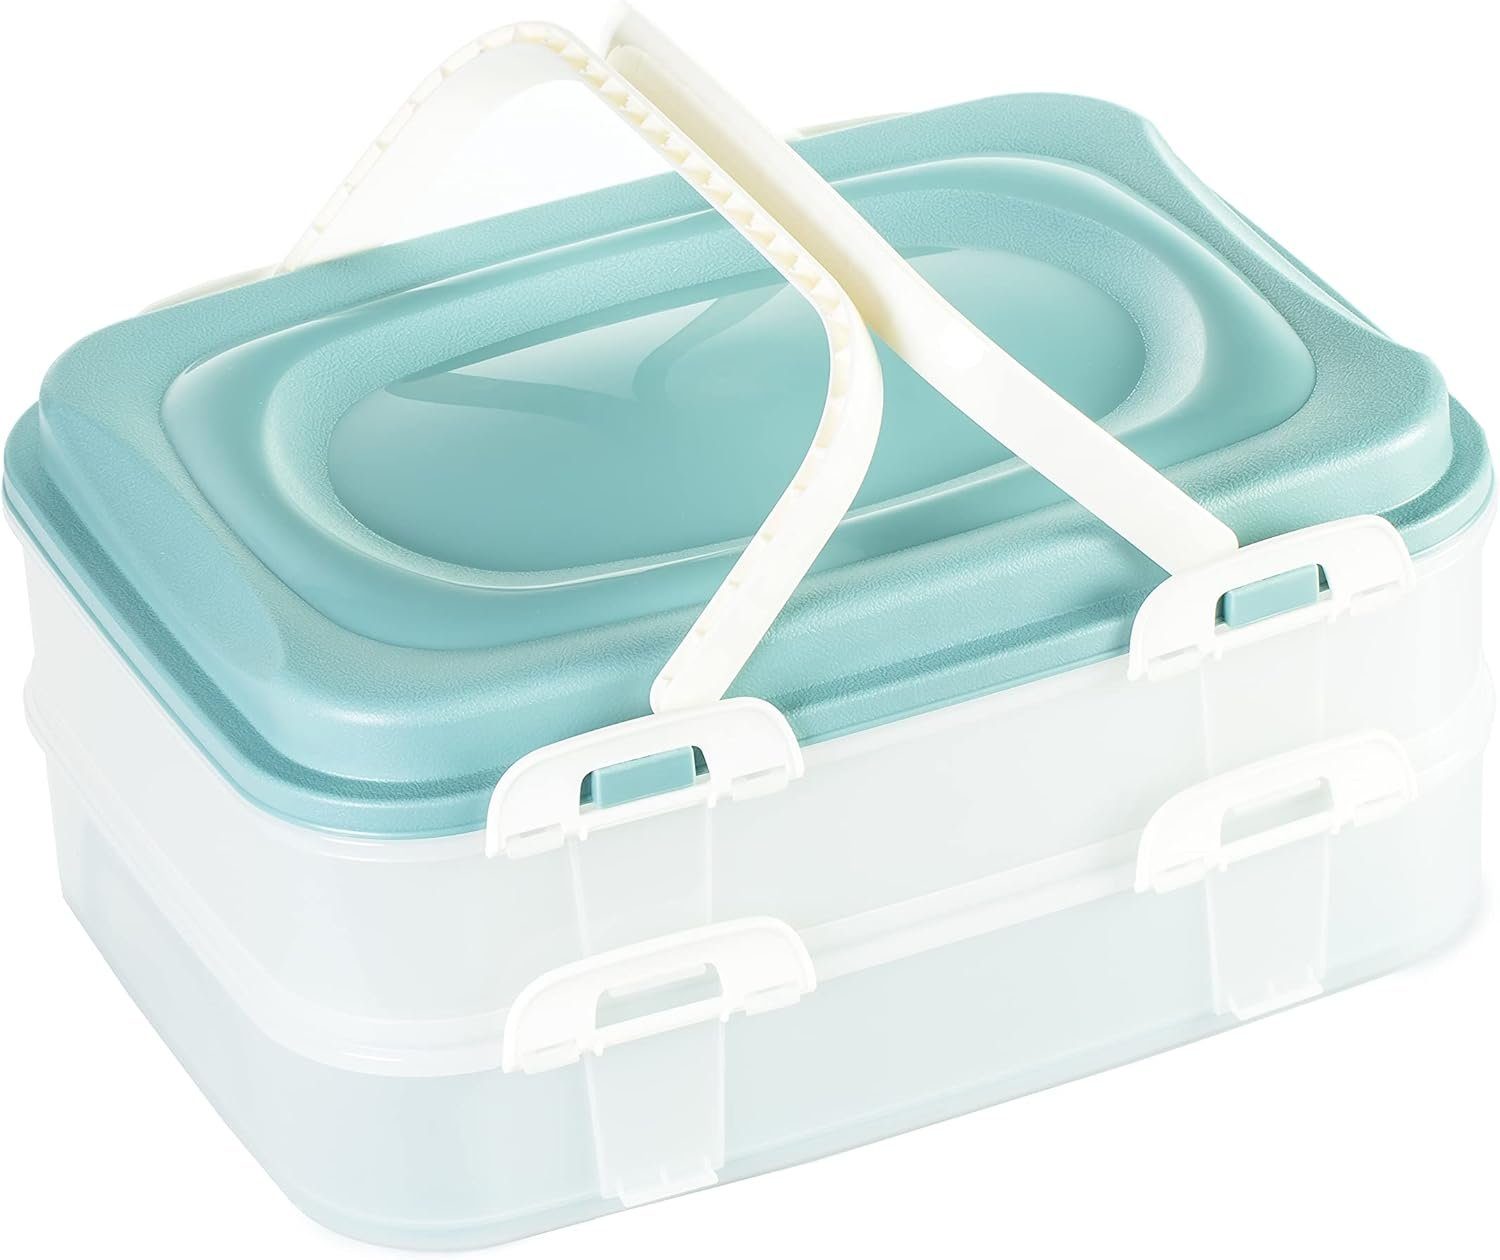 Centi Kuchentransportbox Party Container Kuchenbehälter Lebensmittel Transportbox XL, Kunststoff, (Farbe: Blau), mit 2 Etagen und klappbaren Griffen lebensmittelecht